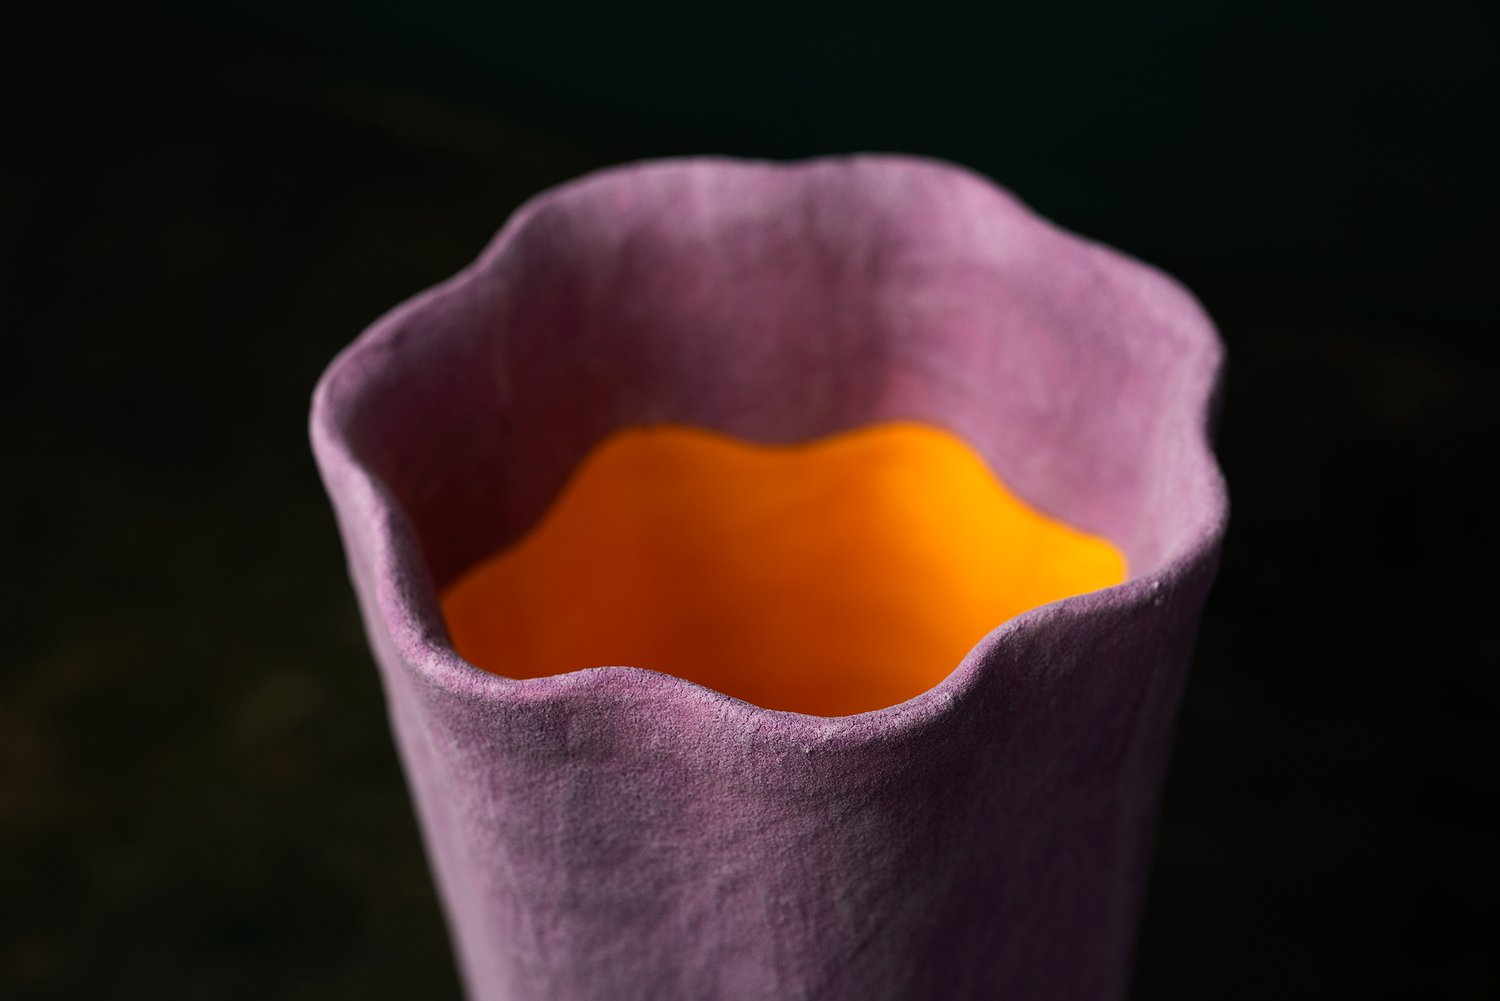 Image of Violet Fluted Vase